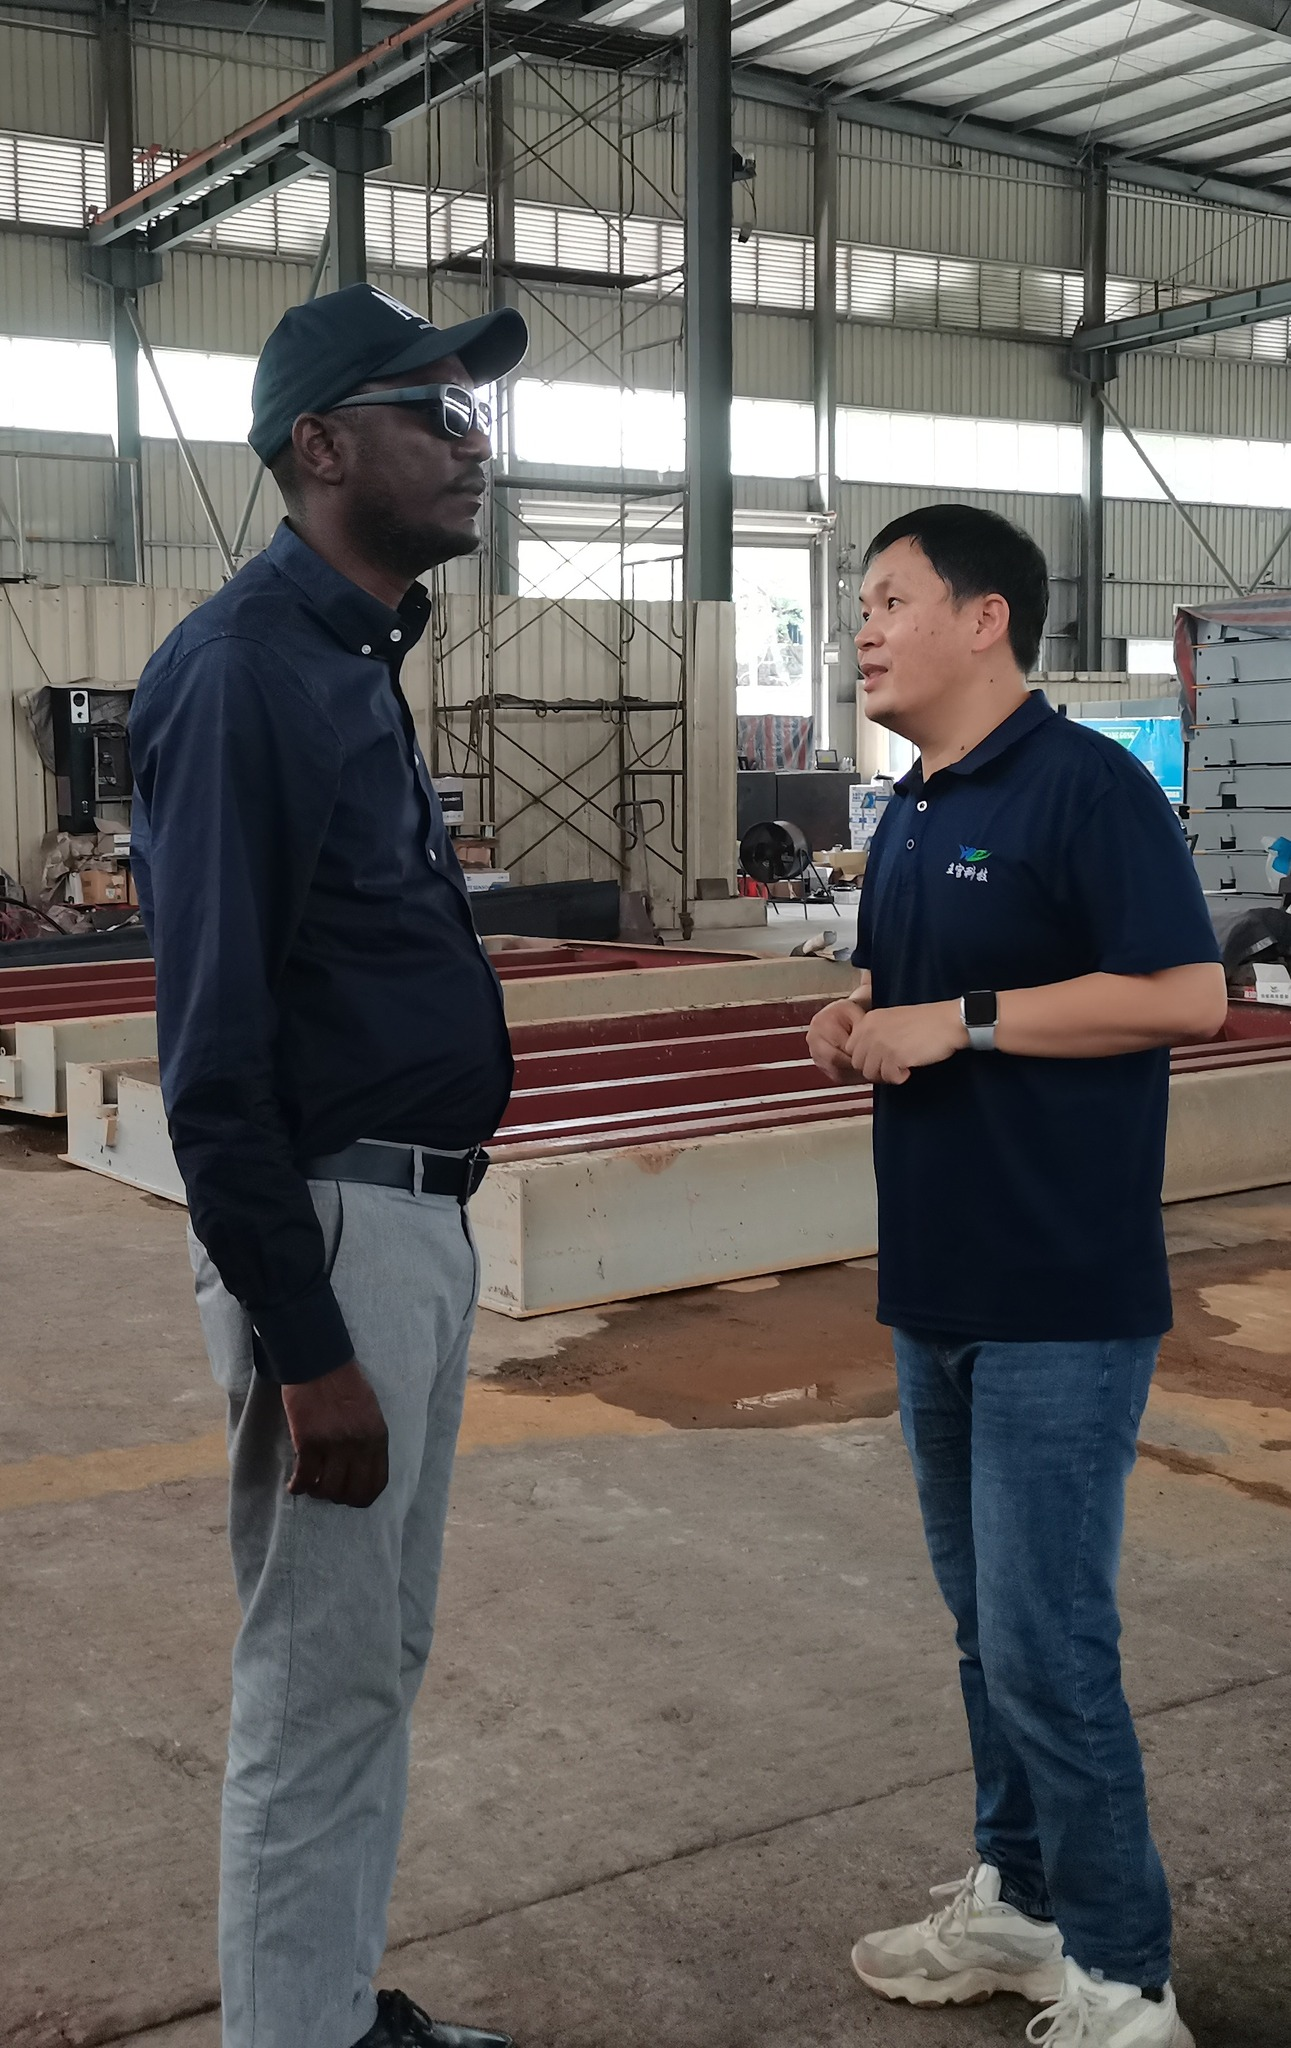 Wanggongas šiltai pasveikino Zambijos klientą verslo vizitui